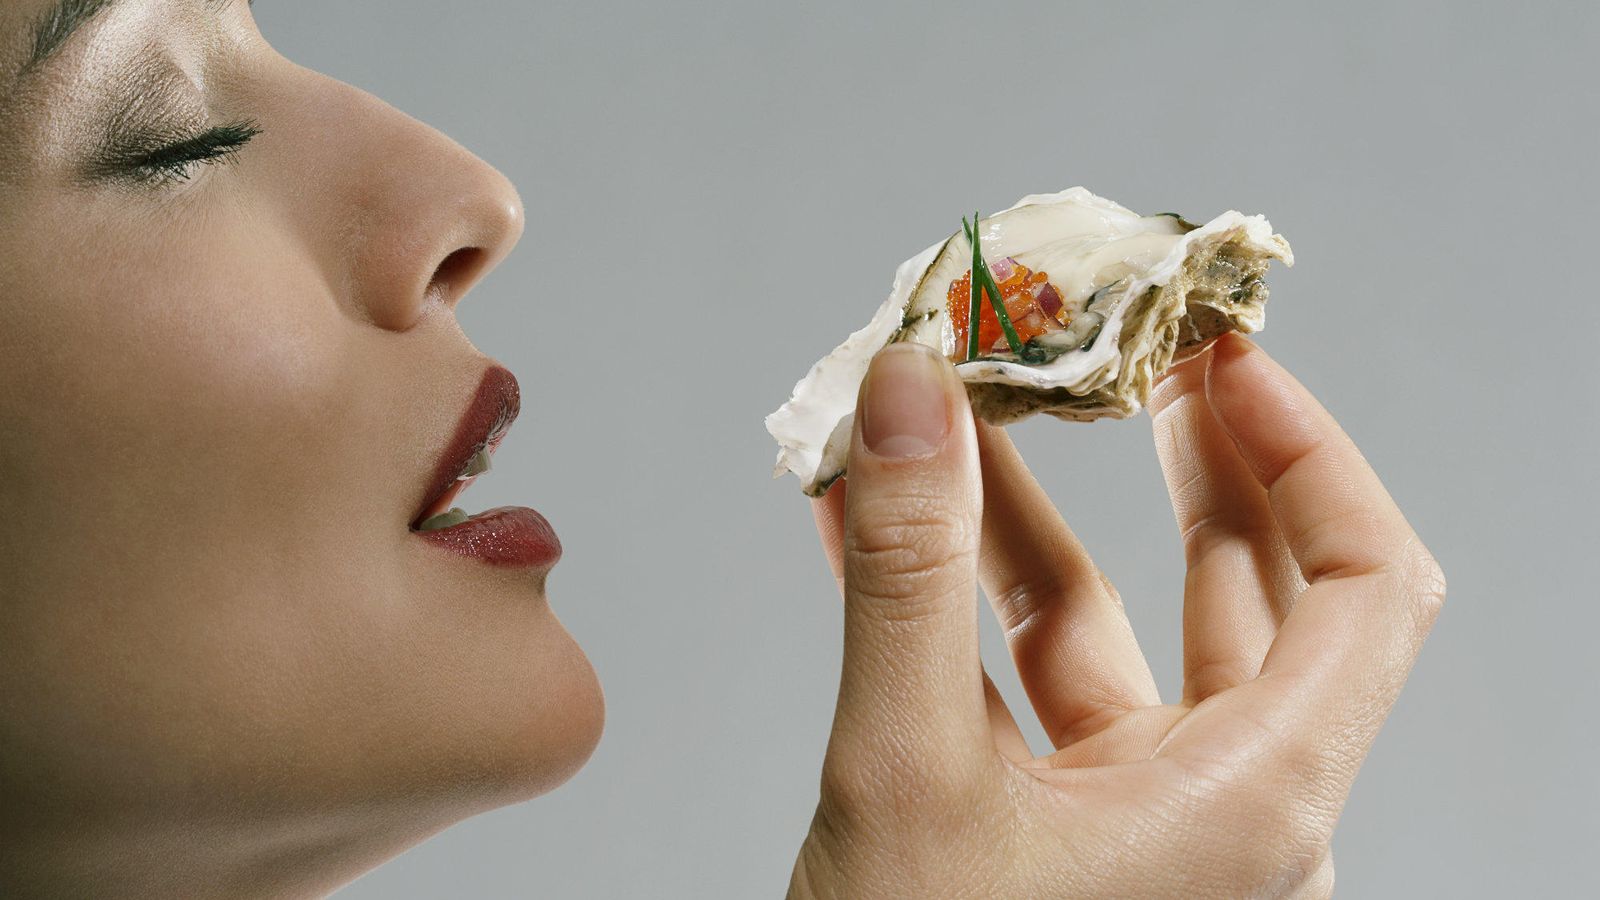 Foto: ¿De verdad existen alimentos que incrementan el deseo sexual? (Corbis)